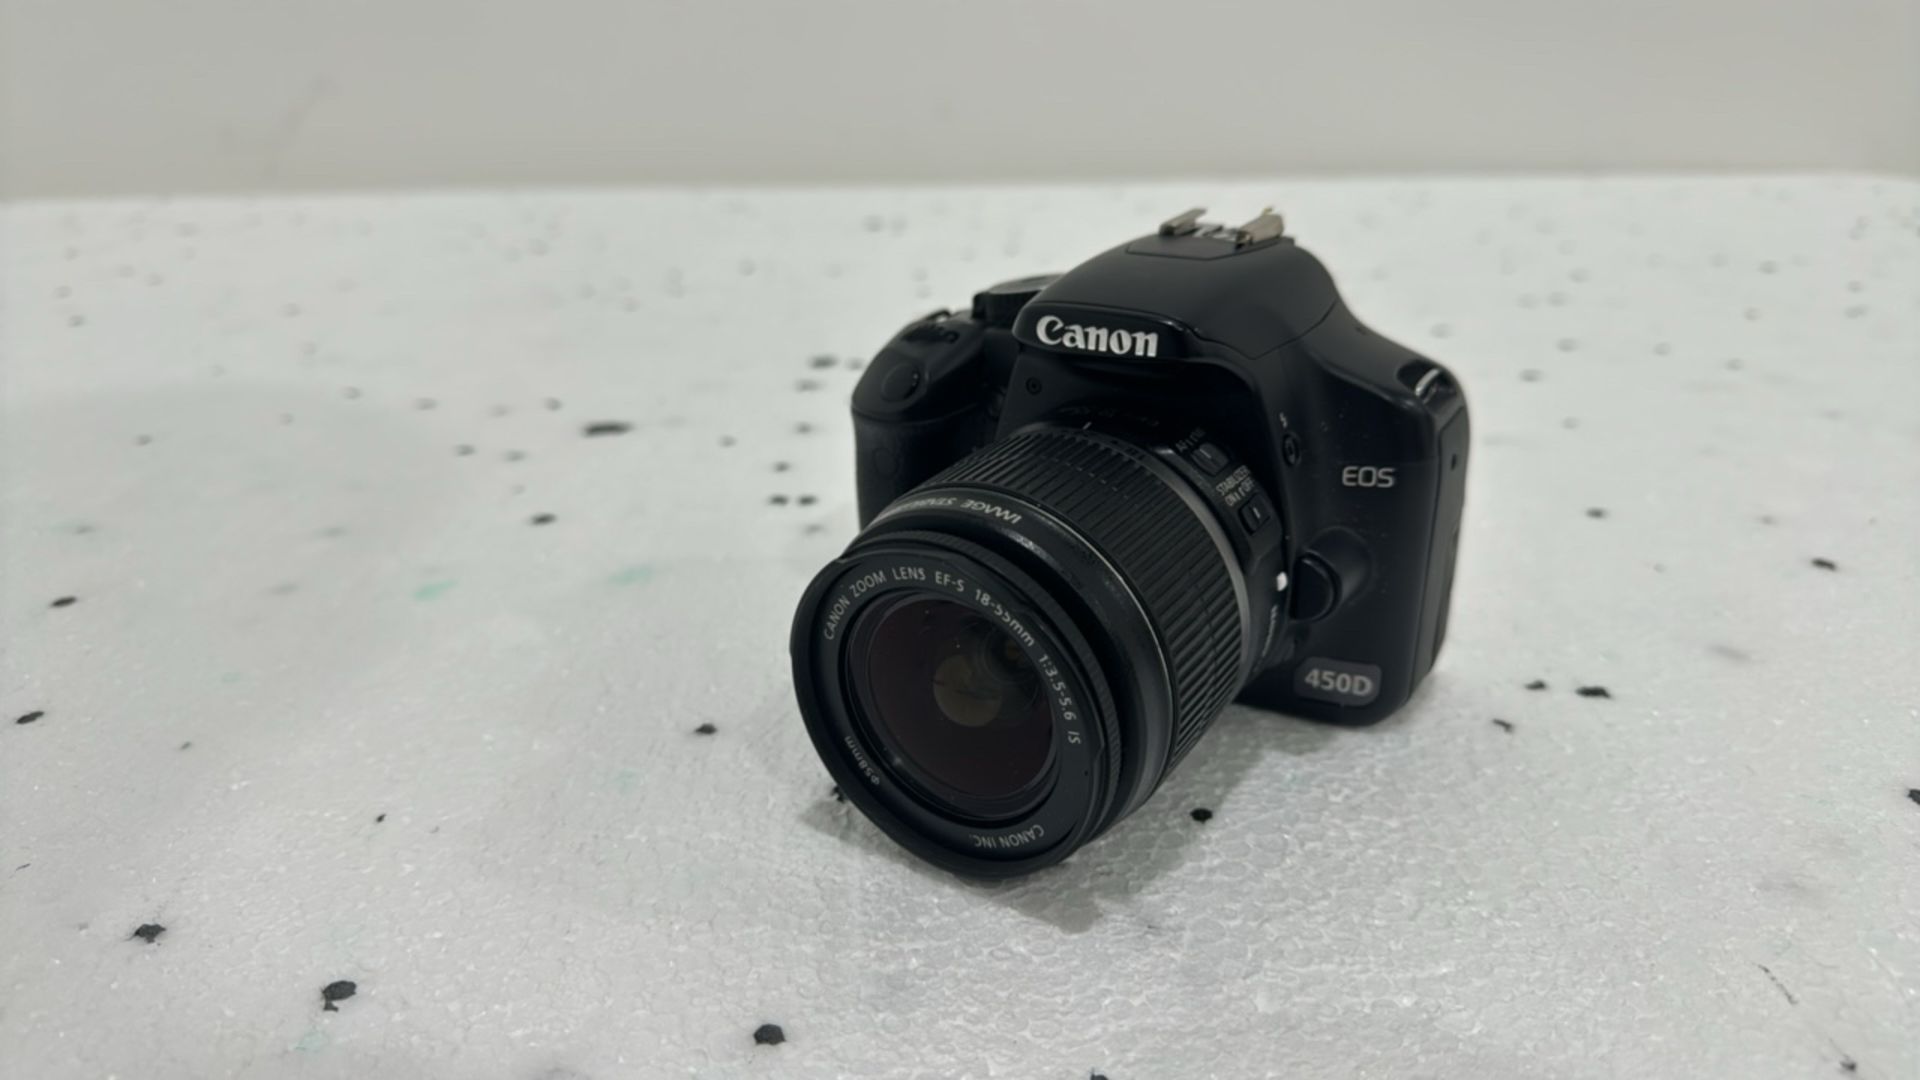 Canon EOS 450D Camera